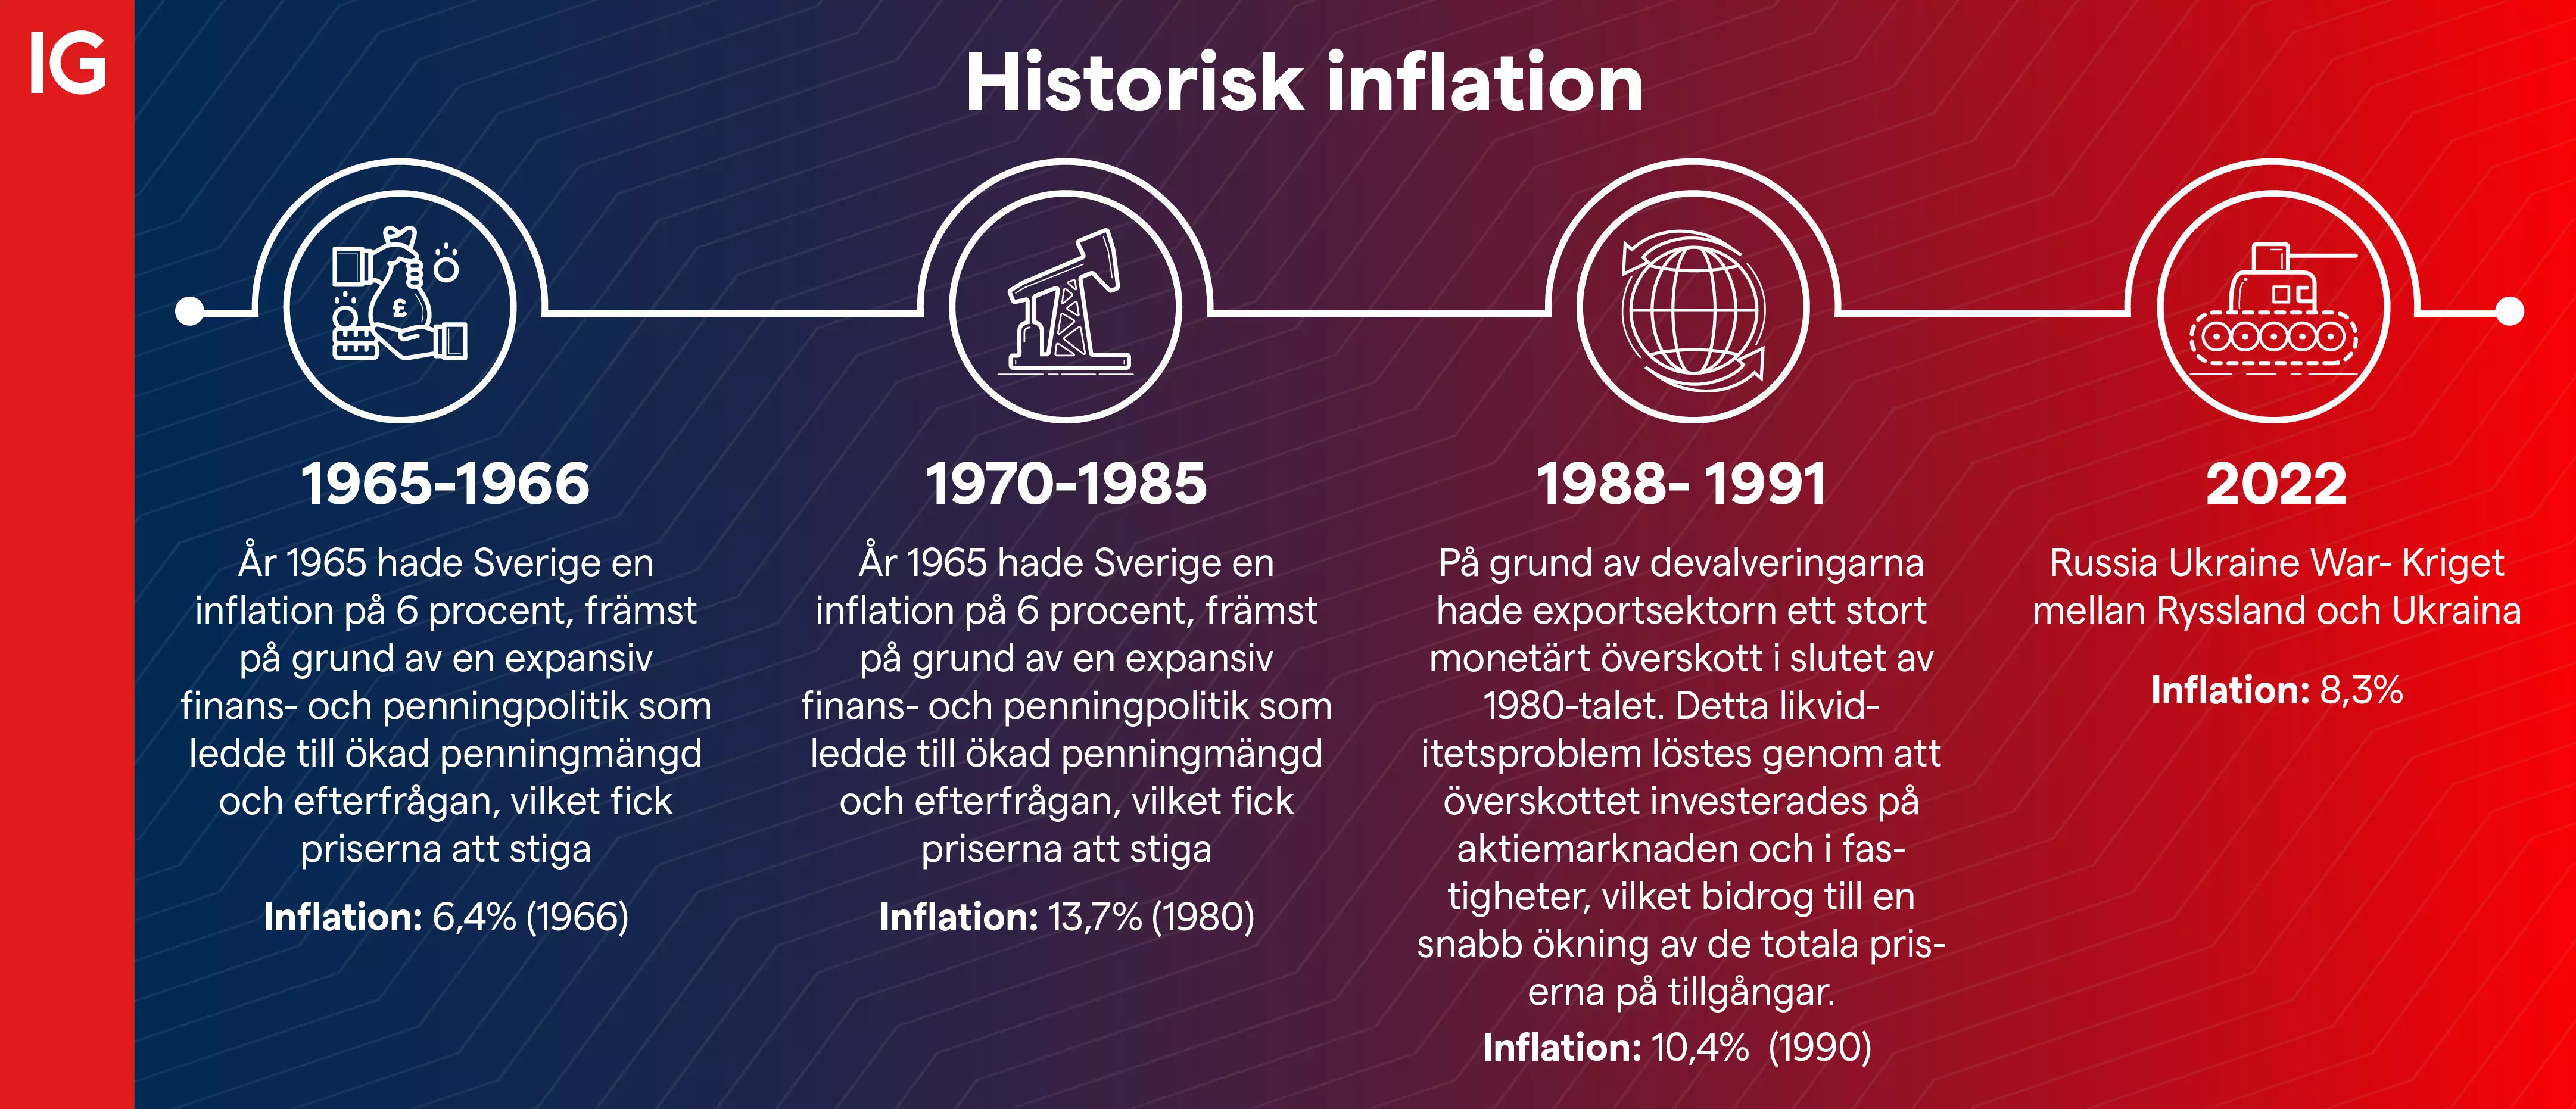 Historisk inflation i Sverige: 1950 till 2022